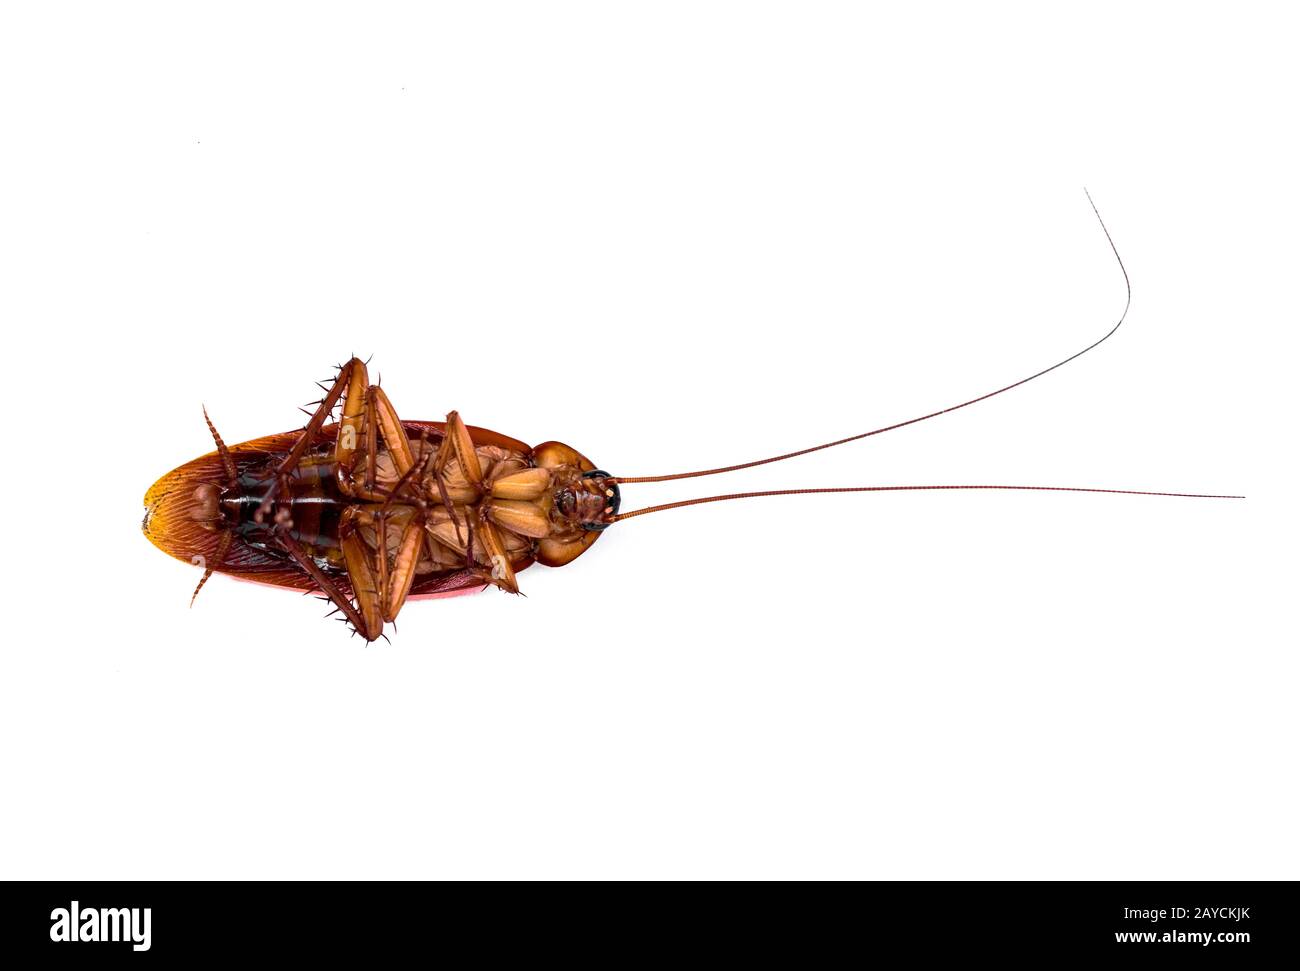 Periplaneta americana: Gros plan du côté ventral du Baising américain Cockroach avec des parties identifiables du corps et des antennes longues, sur fond blanc avion Banque D'Images